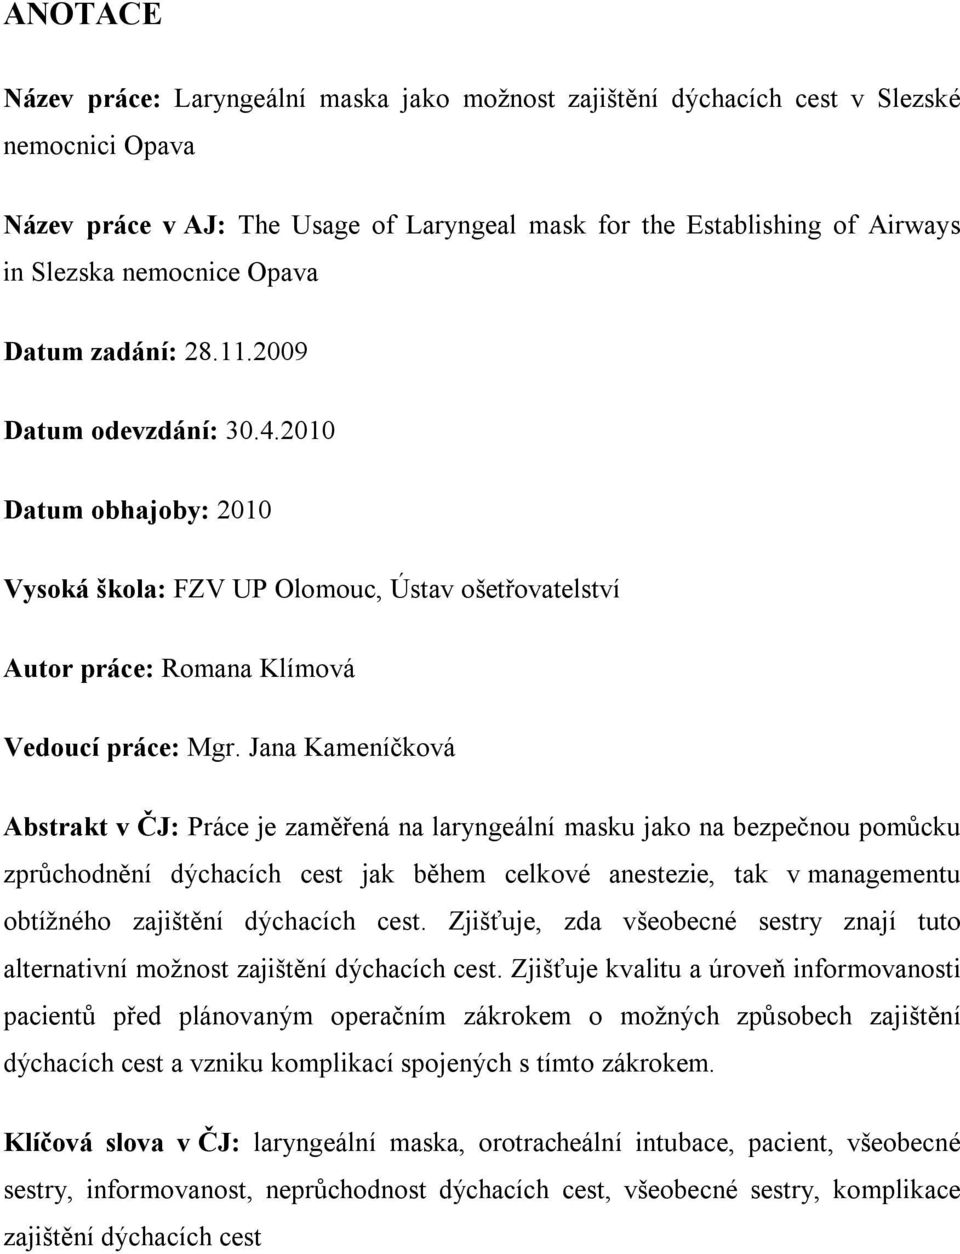 Univerzita Palackého v Olomouci. Laryngeální maska jako možnost zajištění  dýchacích cest. v Slezské nemocnici Opava - PDF Free Download